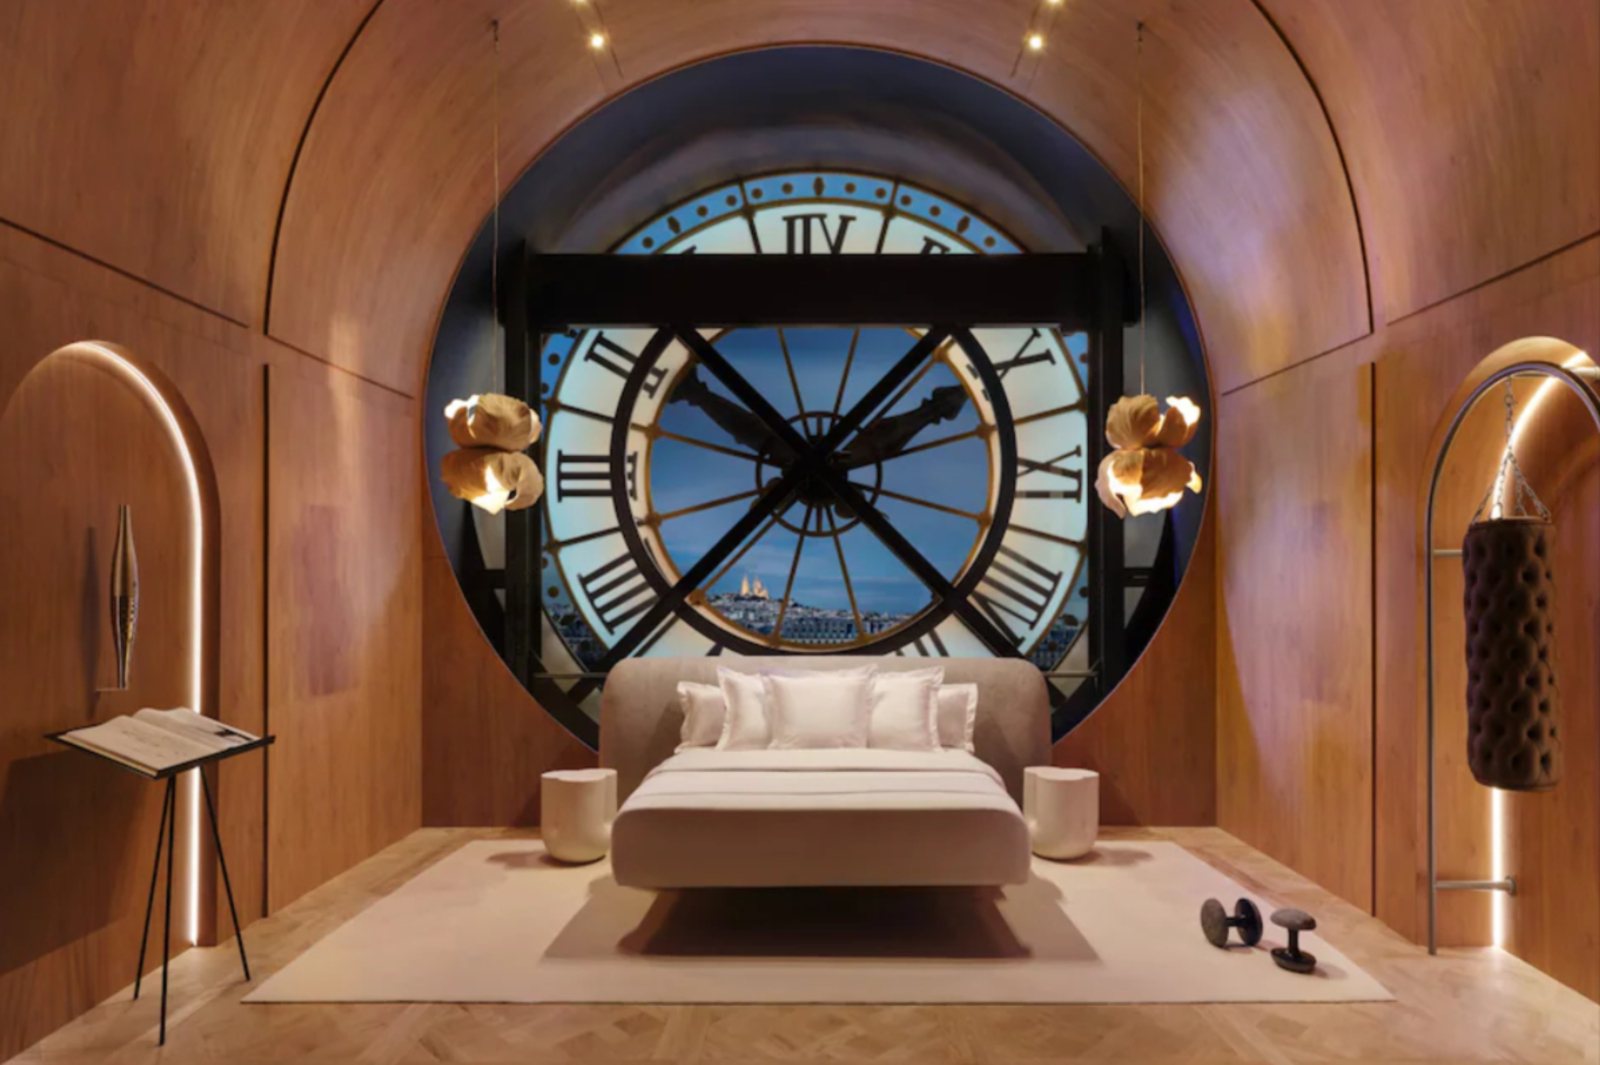 Airbnb offre une nuit, pendant les Jeux olympiques, dans le mythique Salon de l'Horloge du musée d'Orsay : voici comment tenter votre chance